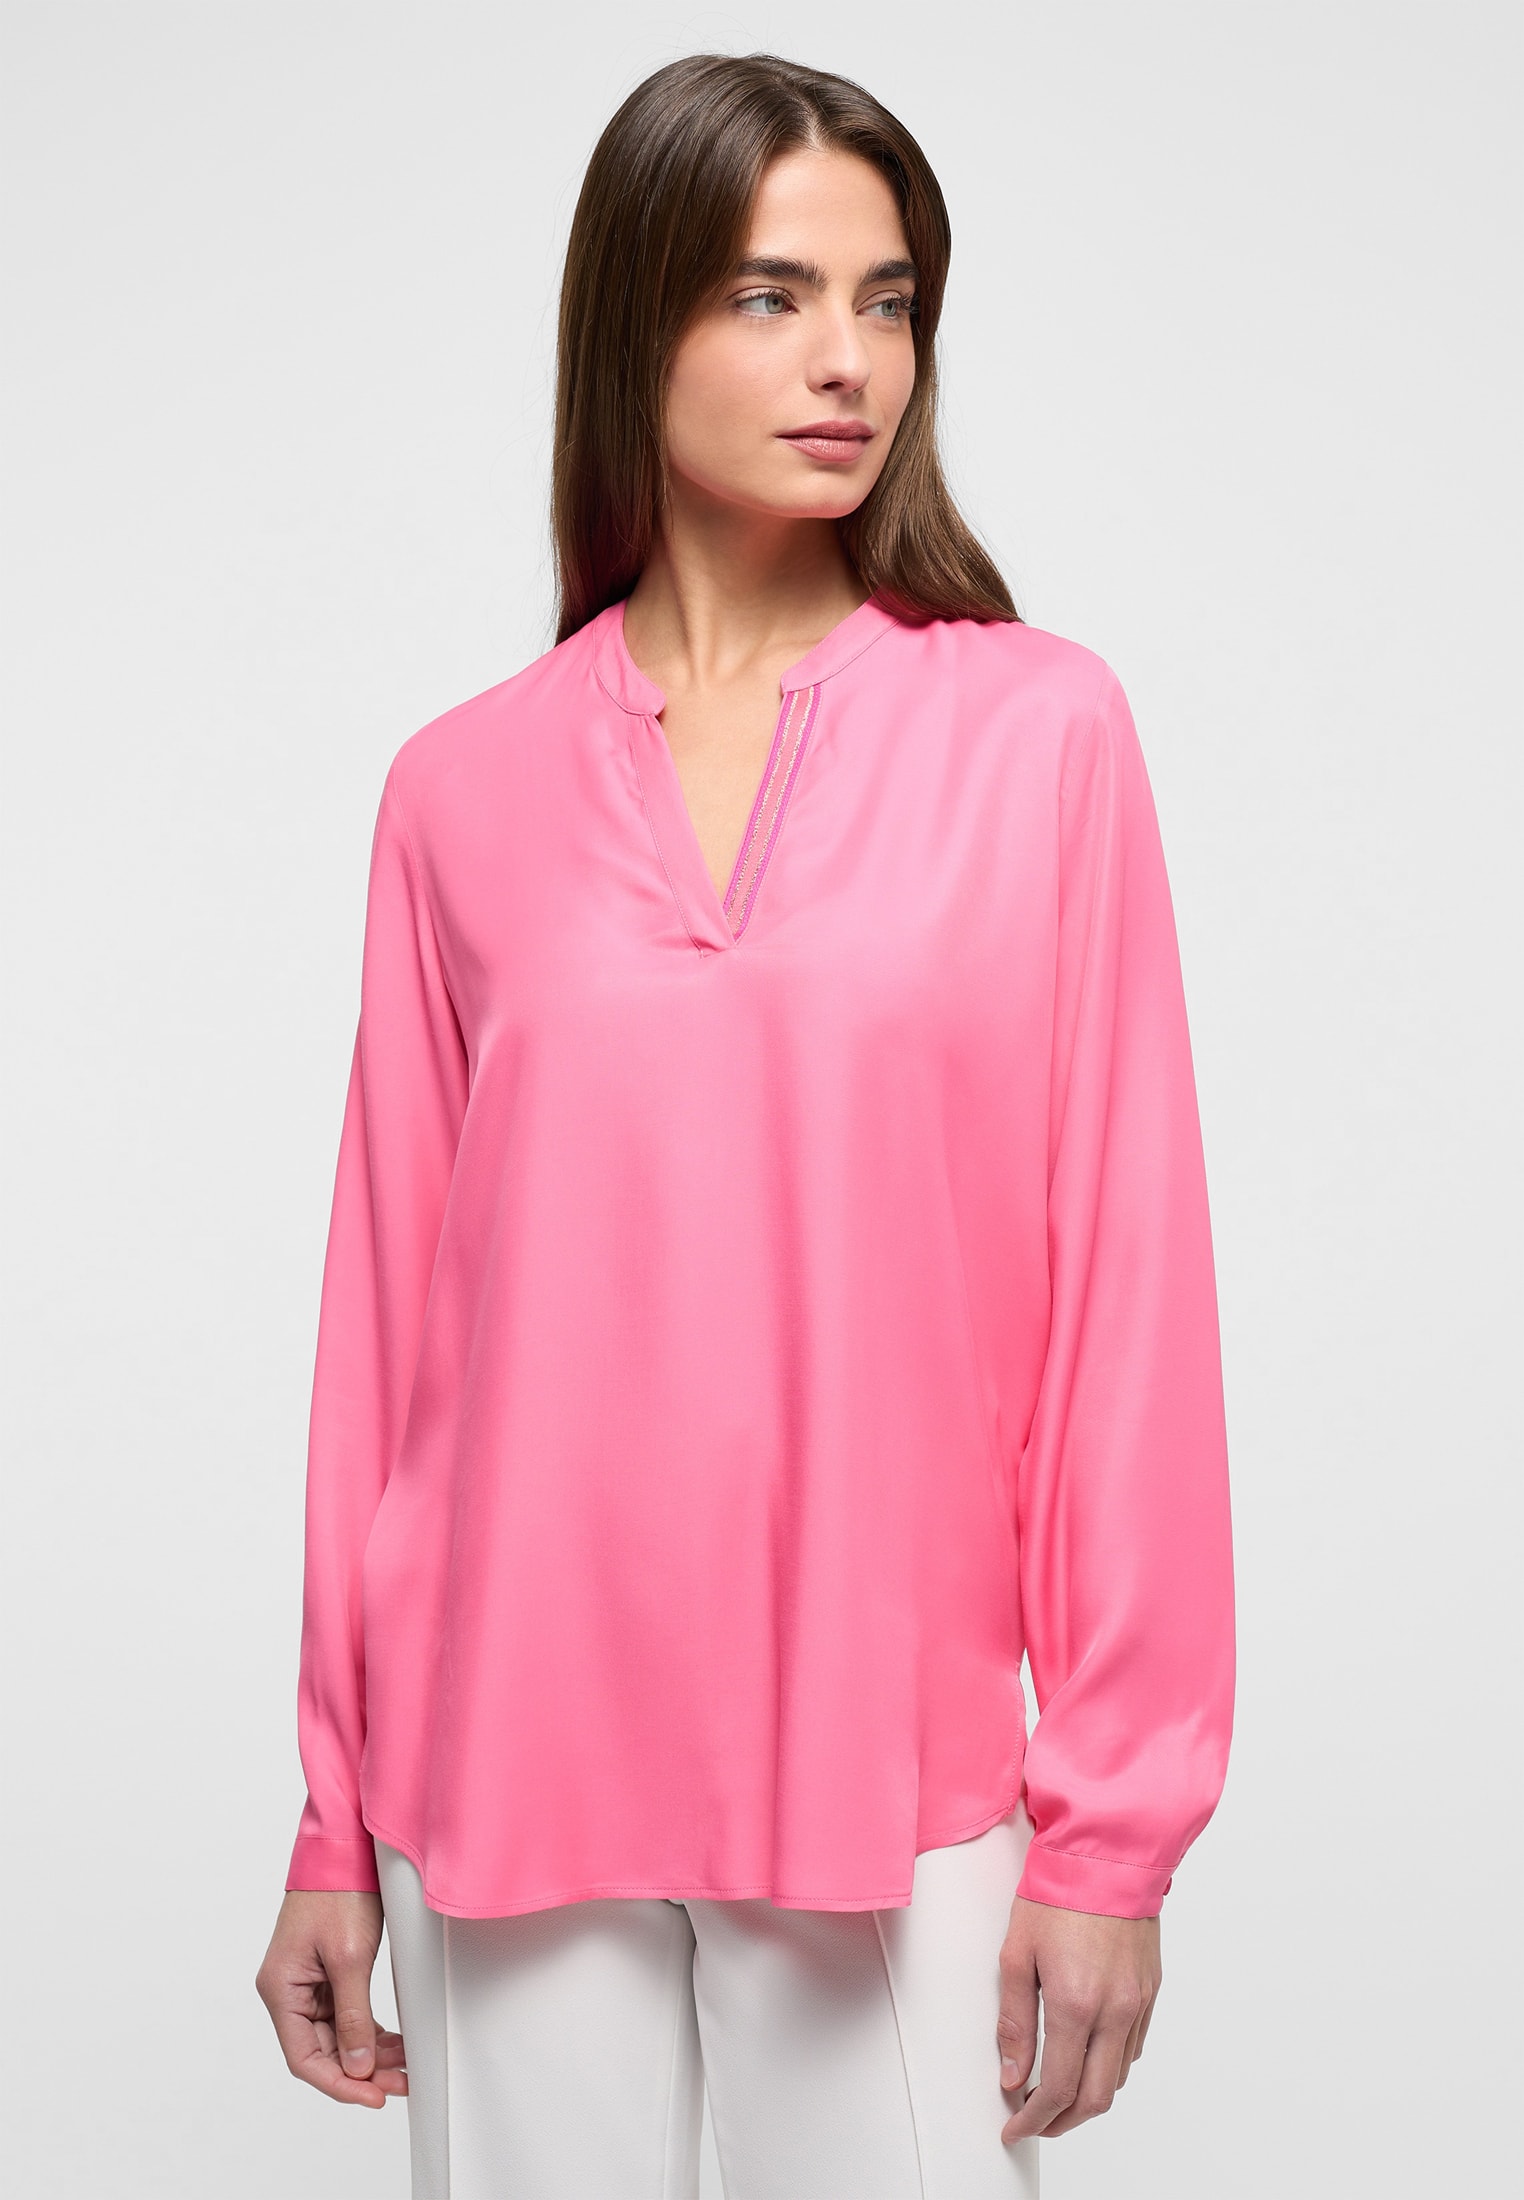 Viscose Shirt pink in Bluse unifarben 42 pink | Langarm 2BL04272-15-21-42-1/1 | | 